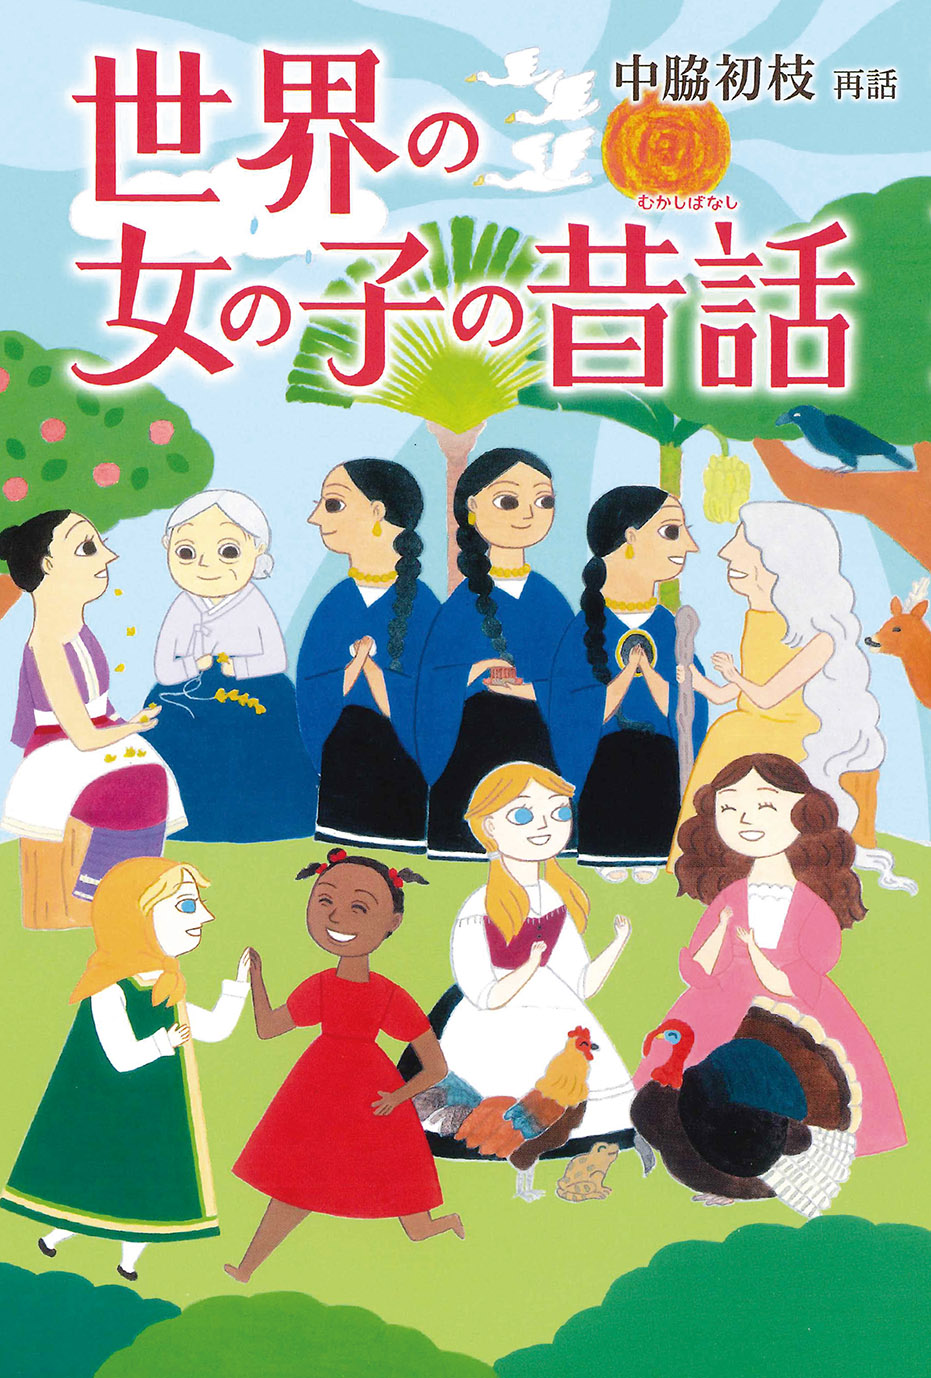 5/14 東京新聞で『世界の女の子の昔話』が紹介されました